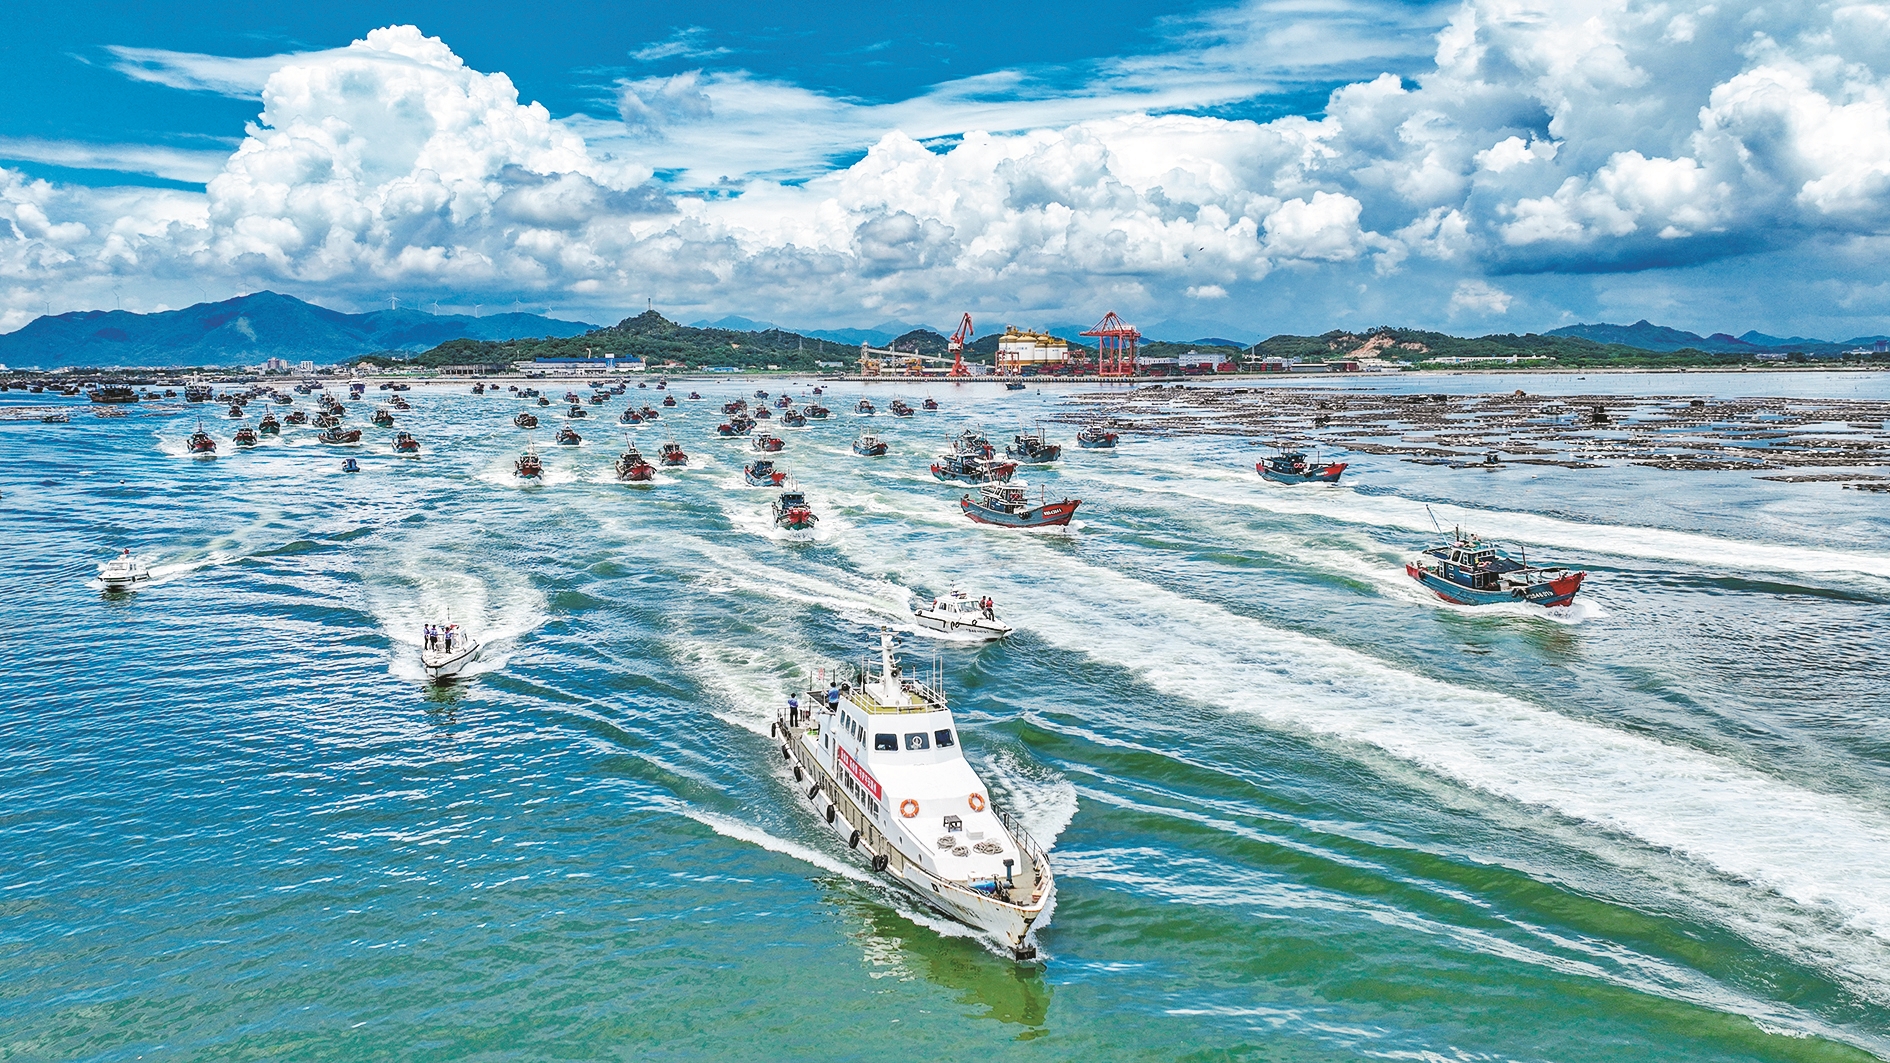 据悉,为确保港澳流动渔船渔民能够顺利复工开渔,珠海边检总站湾仔边检